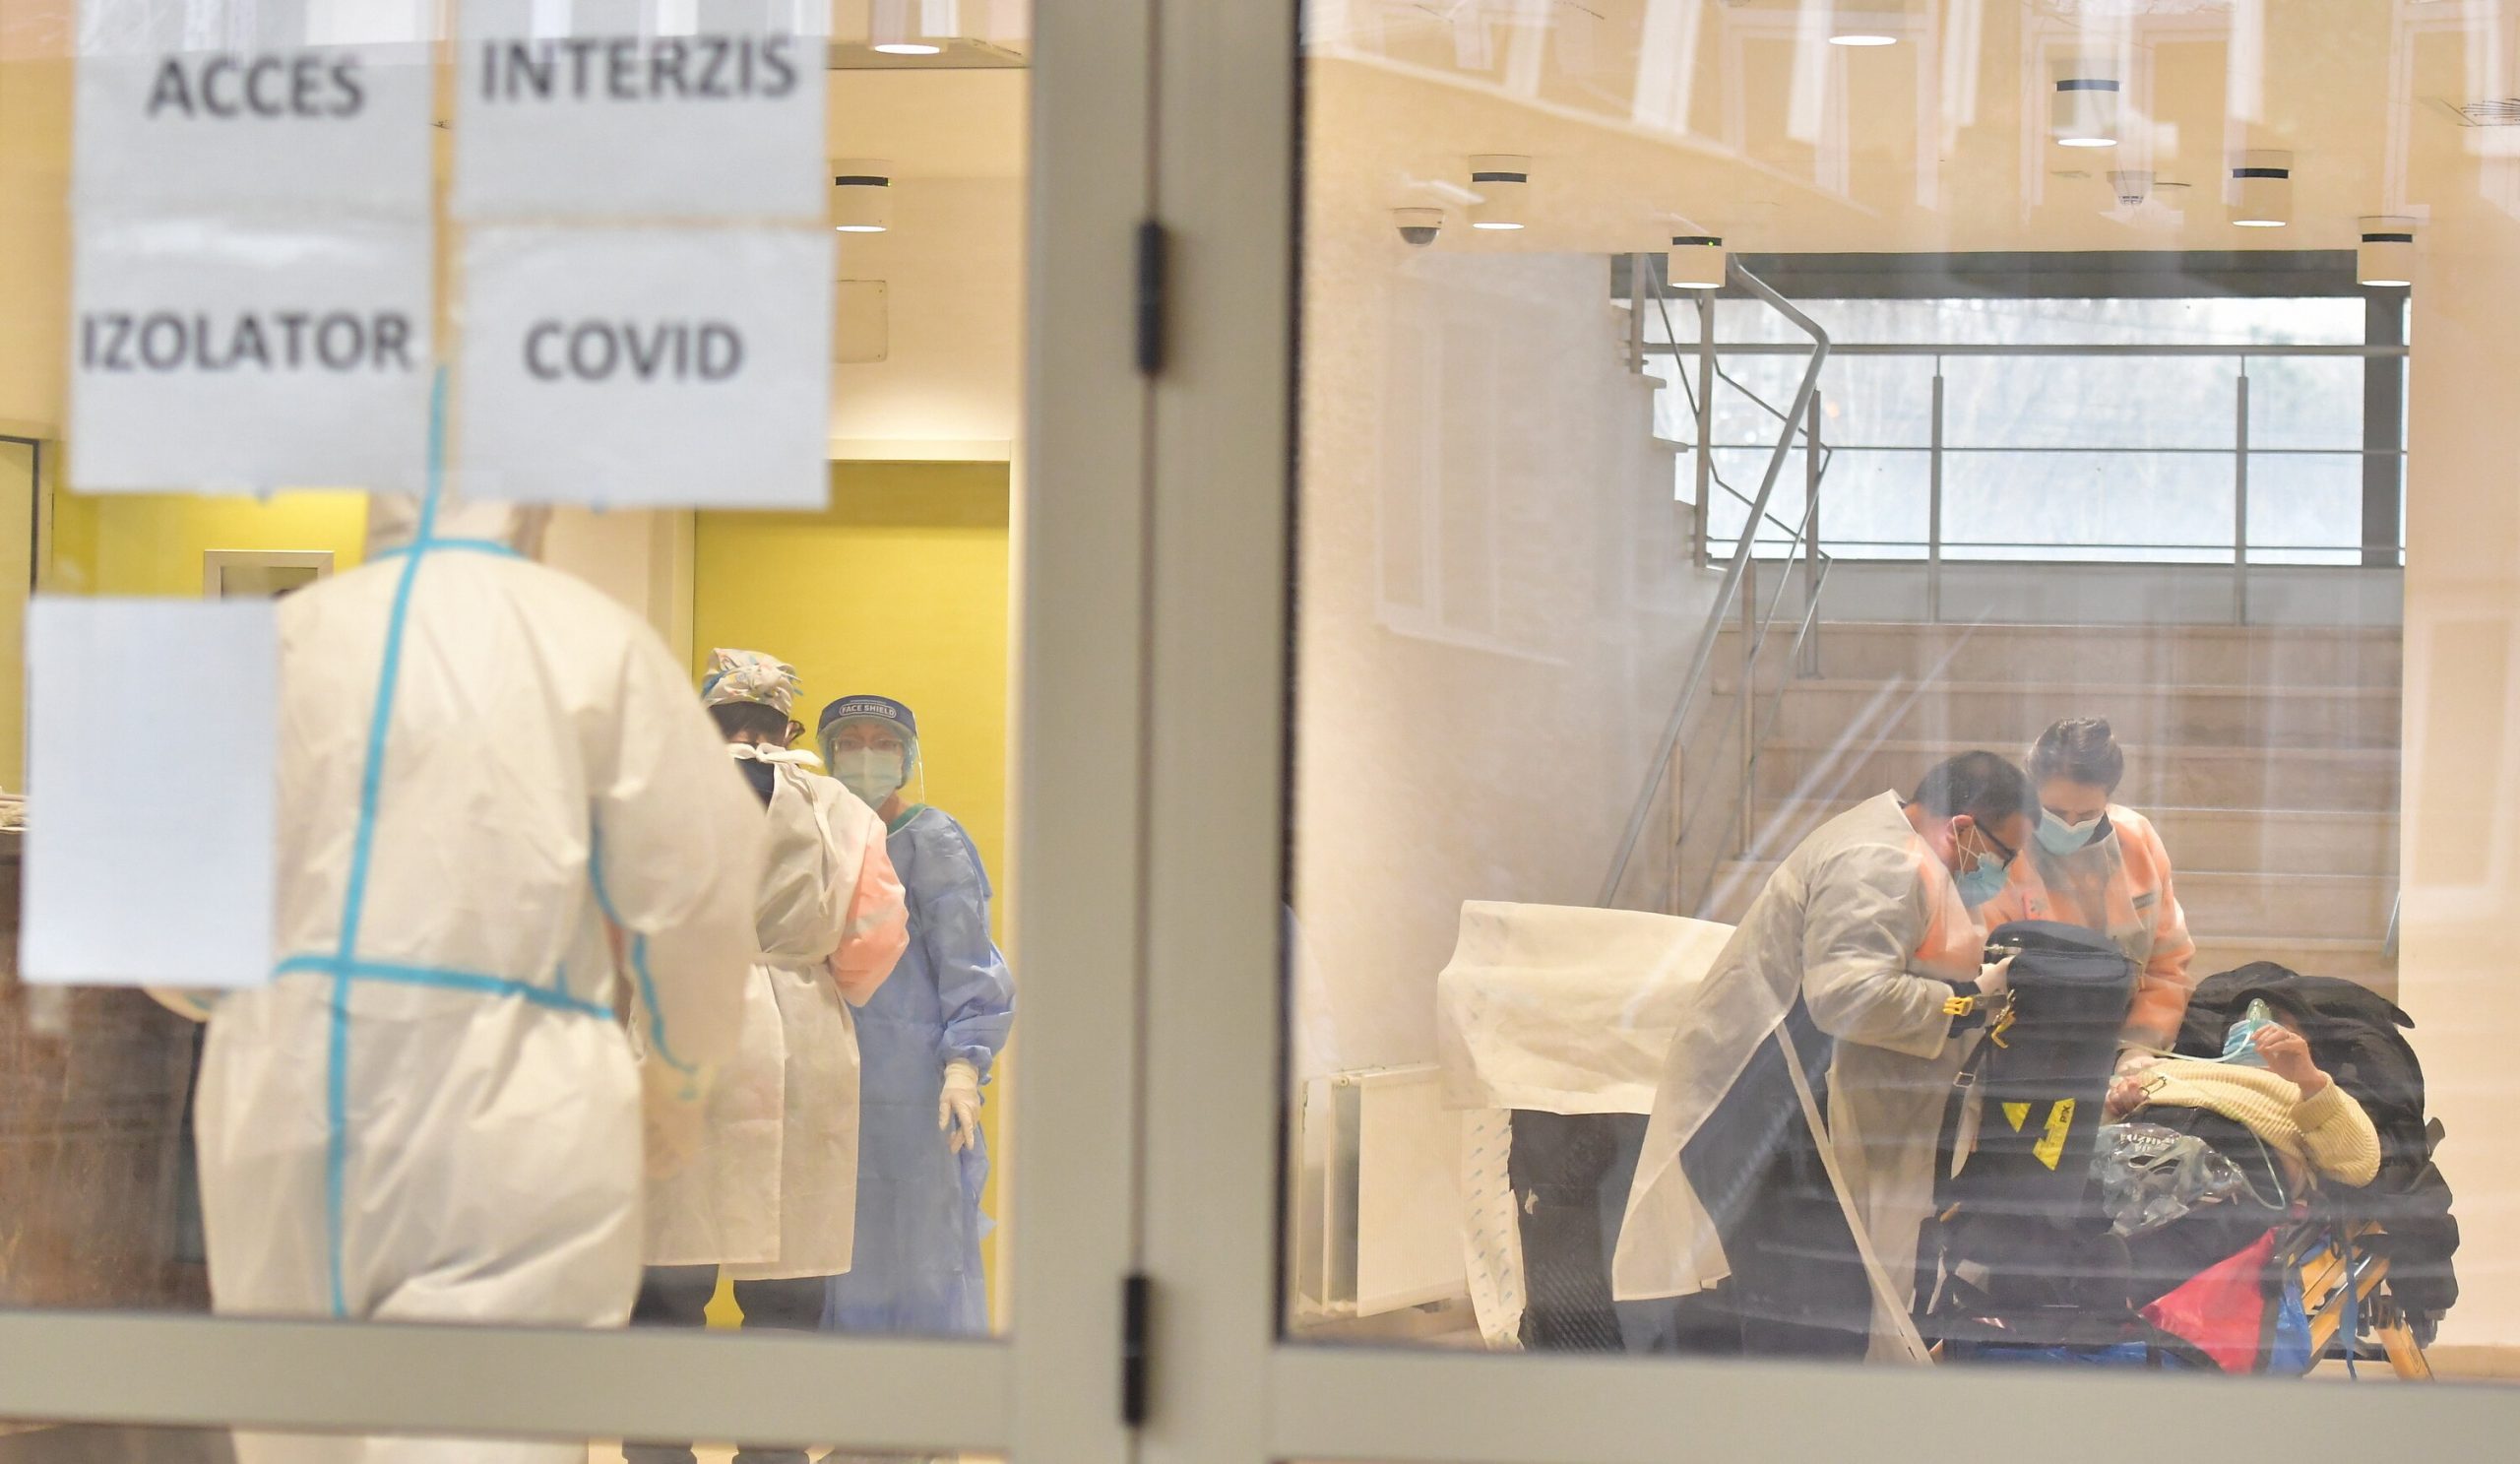 Reuters: Spitalele românești sunt pline cu pacienți Covid, în contextul refuzului cetățenilor de a se vaccina